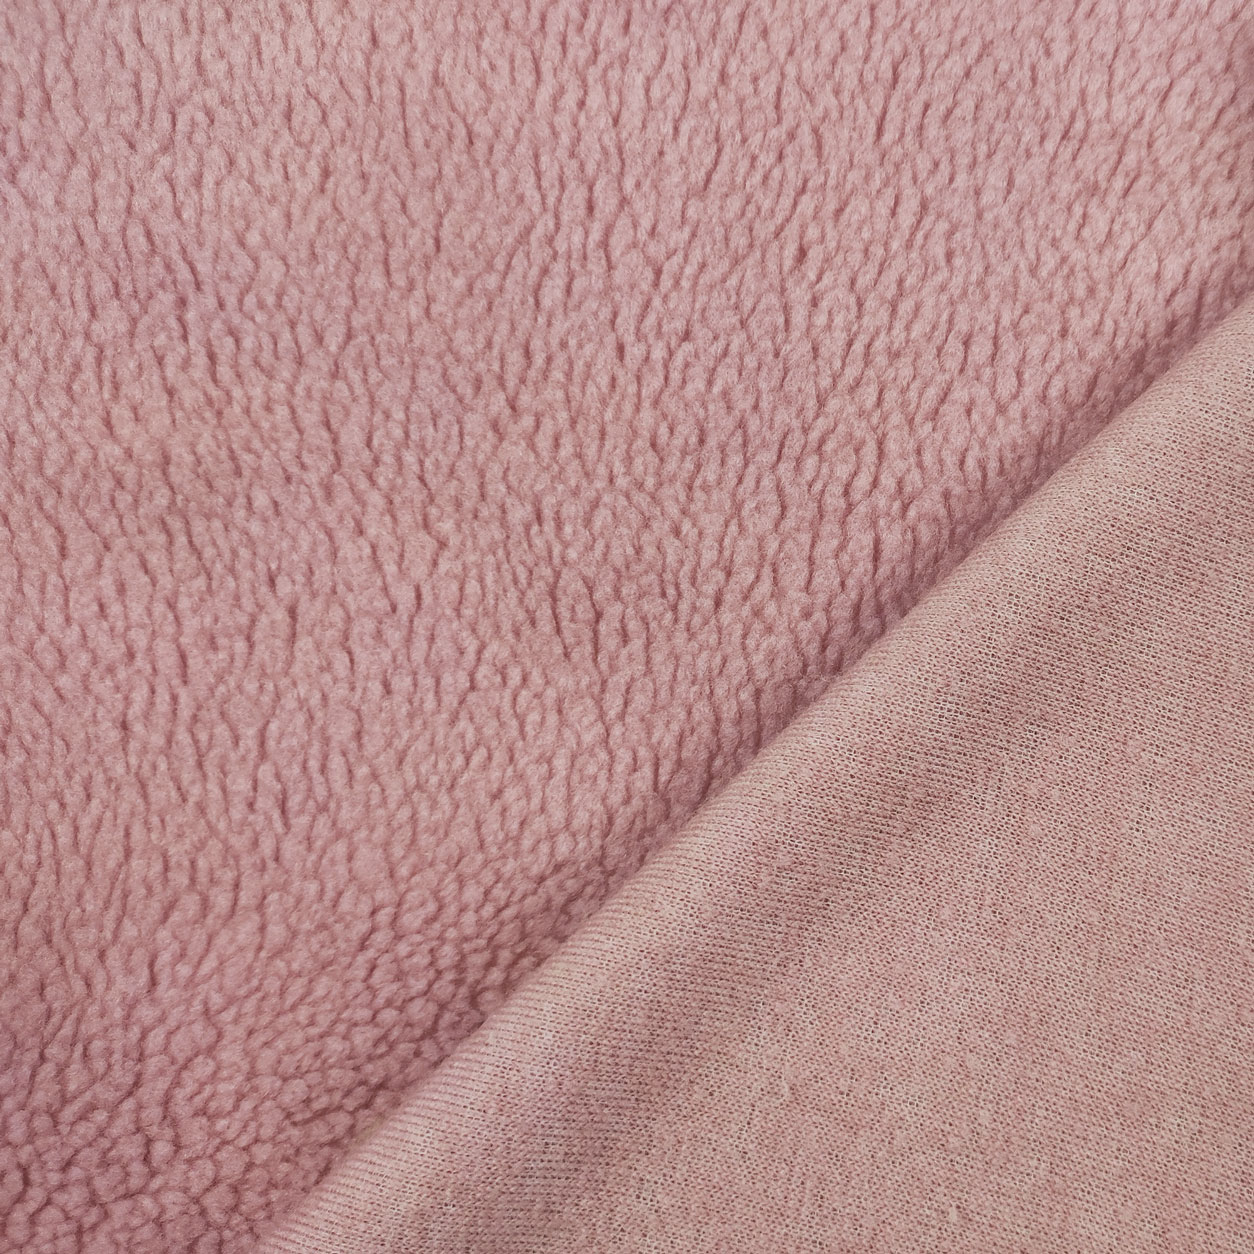 tessuto-per-cappotti-effetto-agnellino-rosa